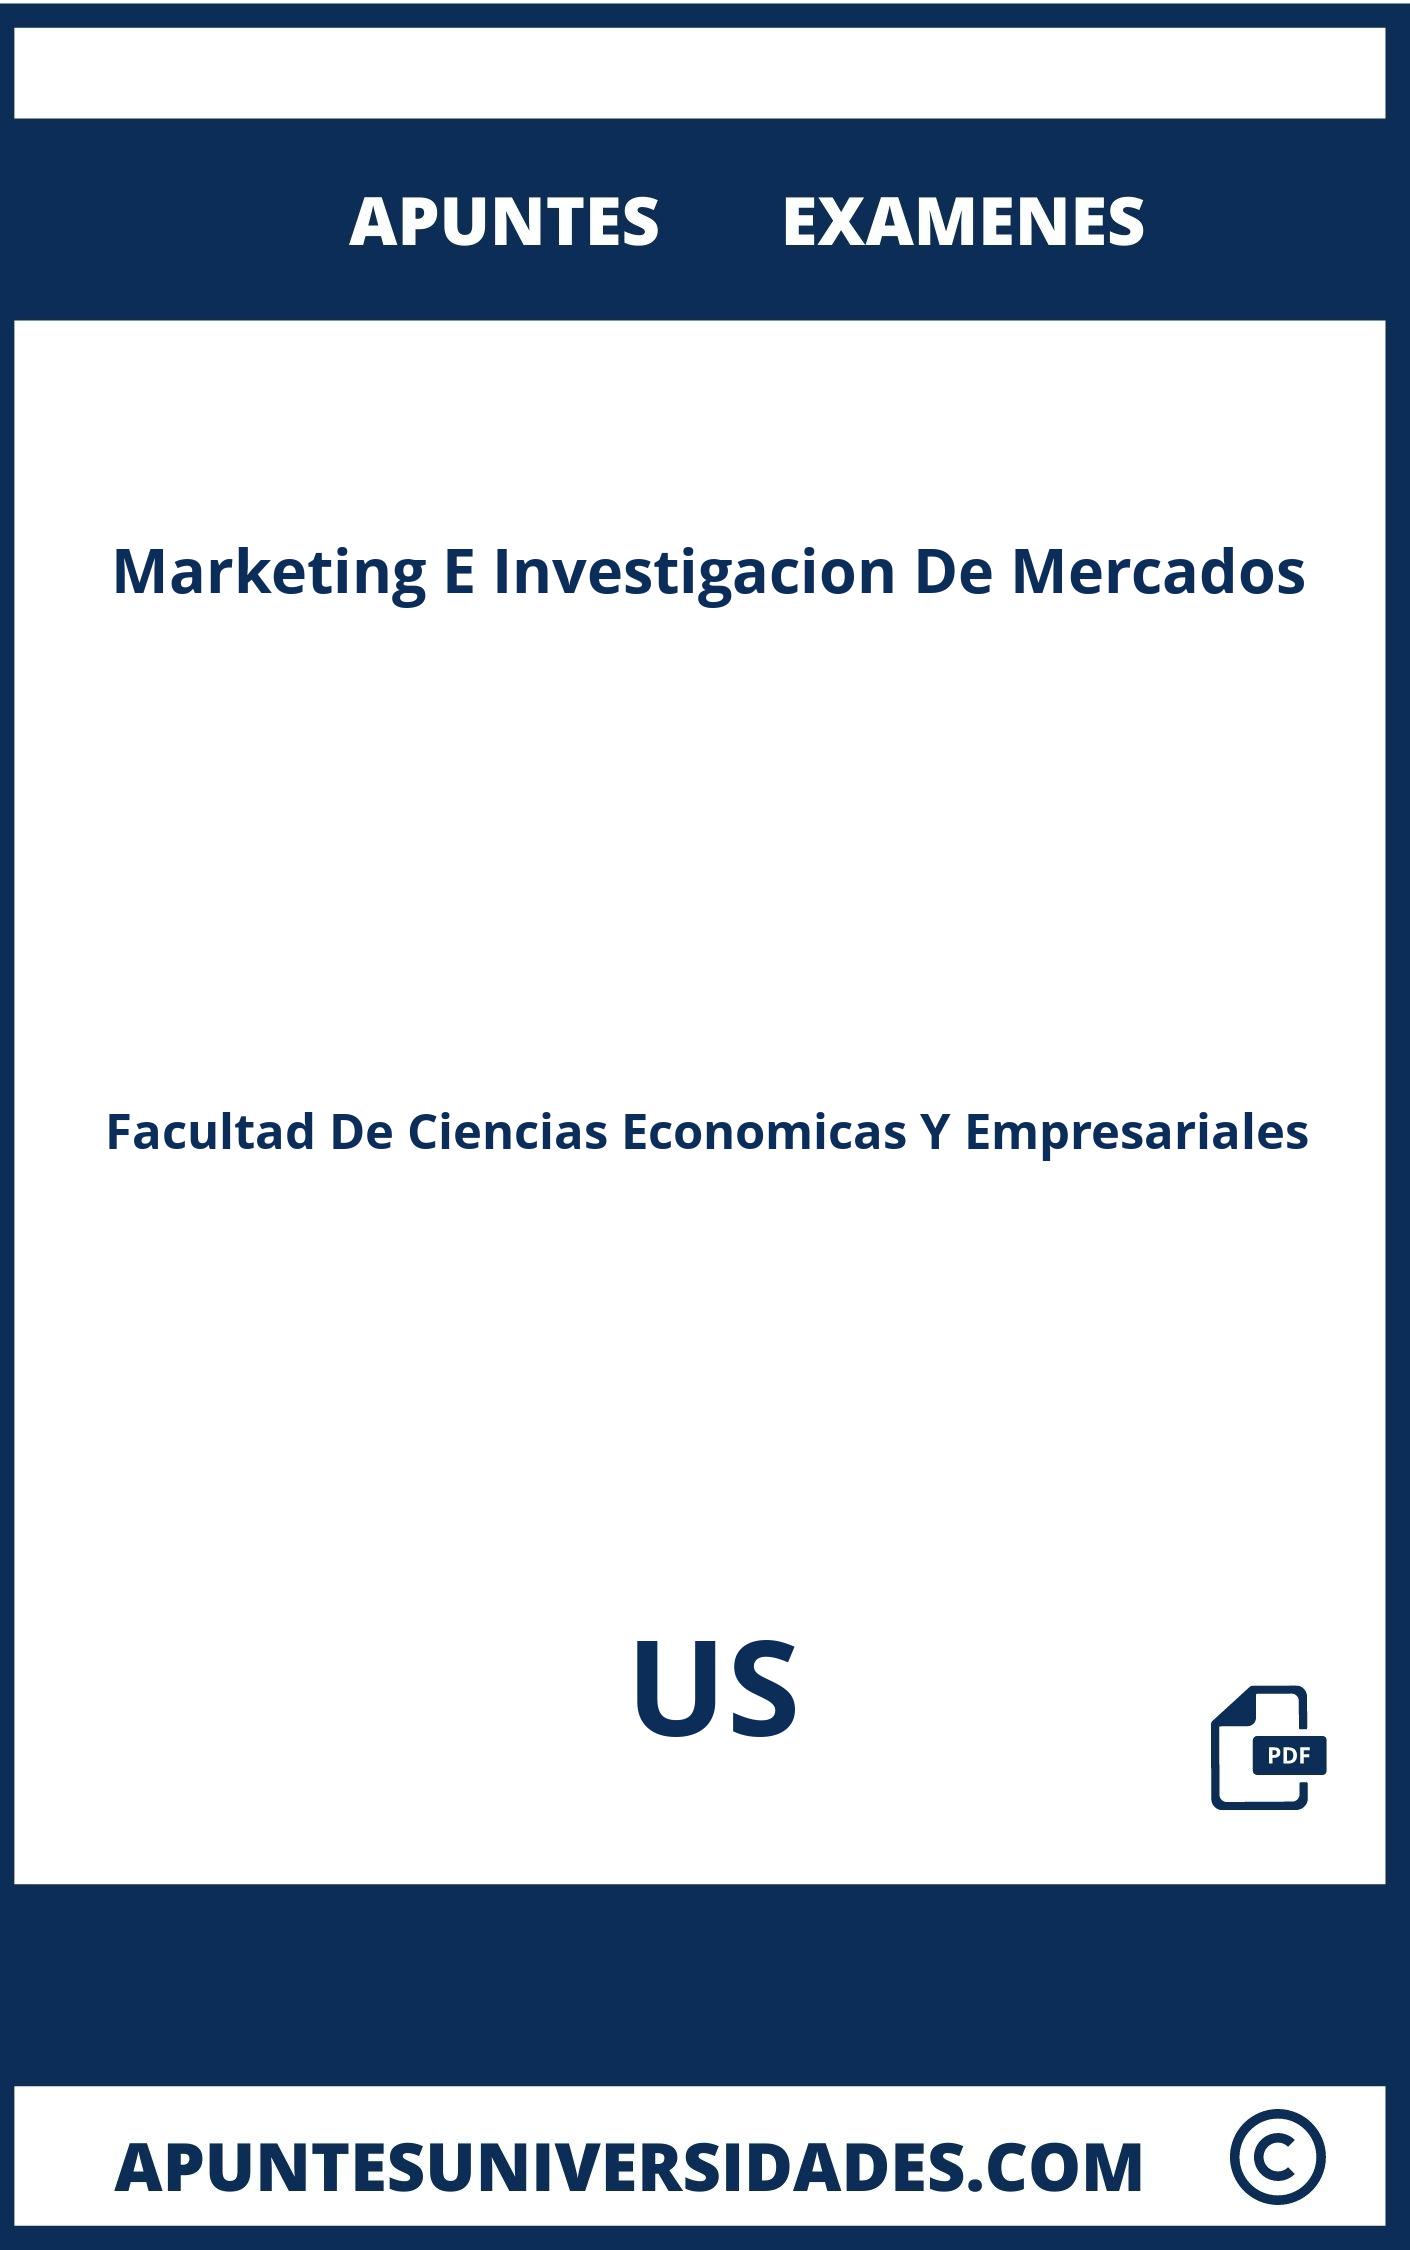 Apuntes y Examenes de Marketing E Investigacion De Mercados US